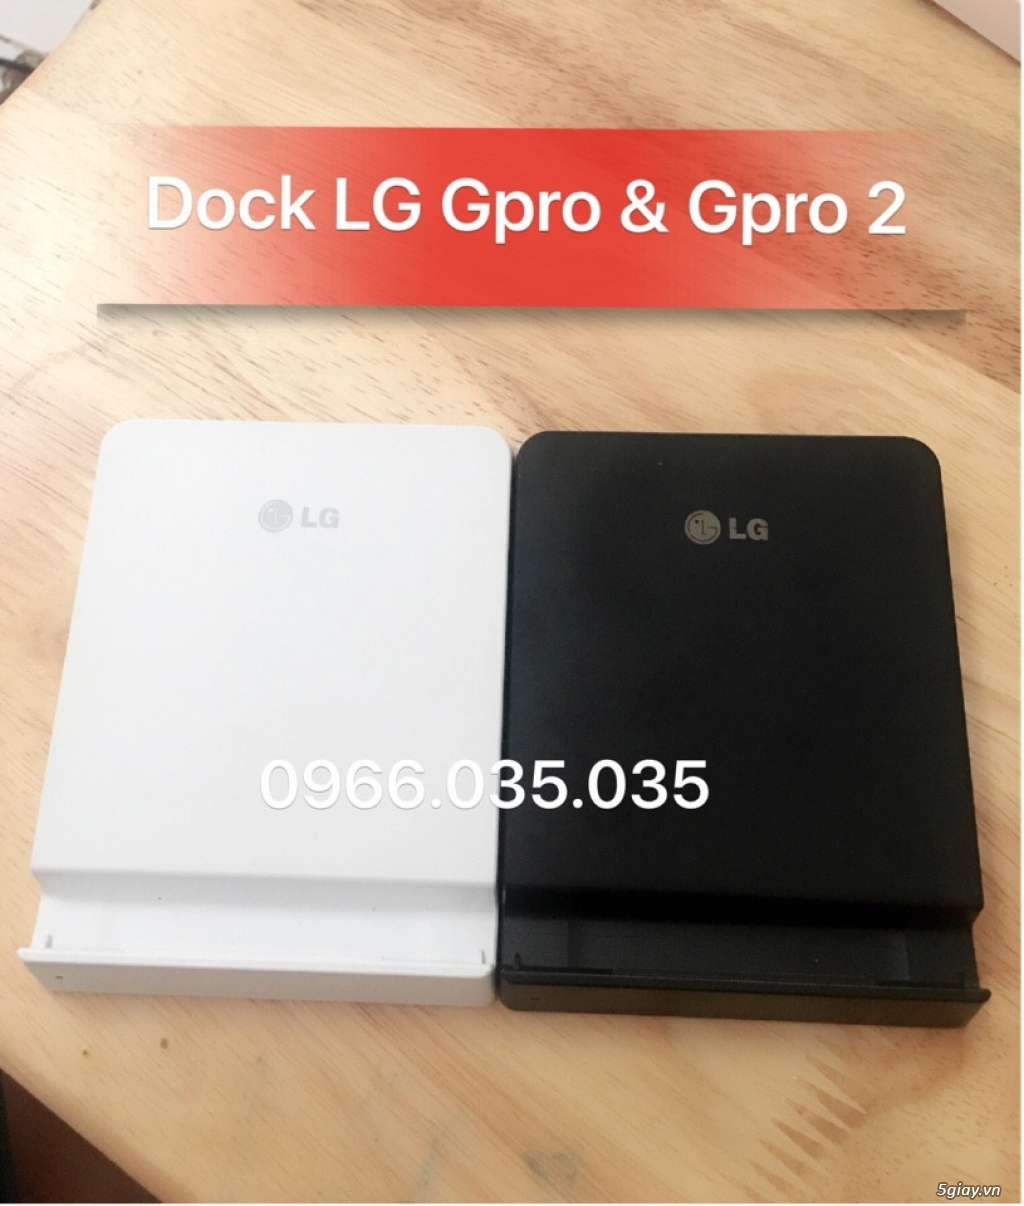 [Pin+Dock LG] G2,Gpro,Gpro 2,G3,G4,G5 Zin máy &[Pin Samsung] Note3,Note4,Note edge,S4,S5 Chính Hãng - 19